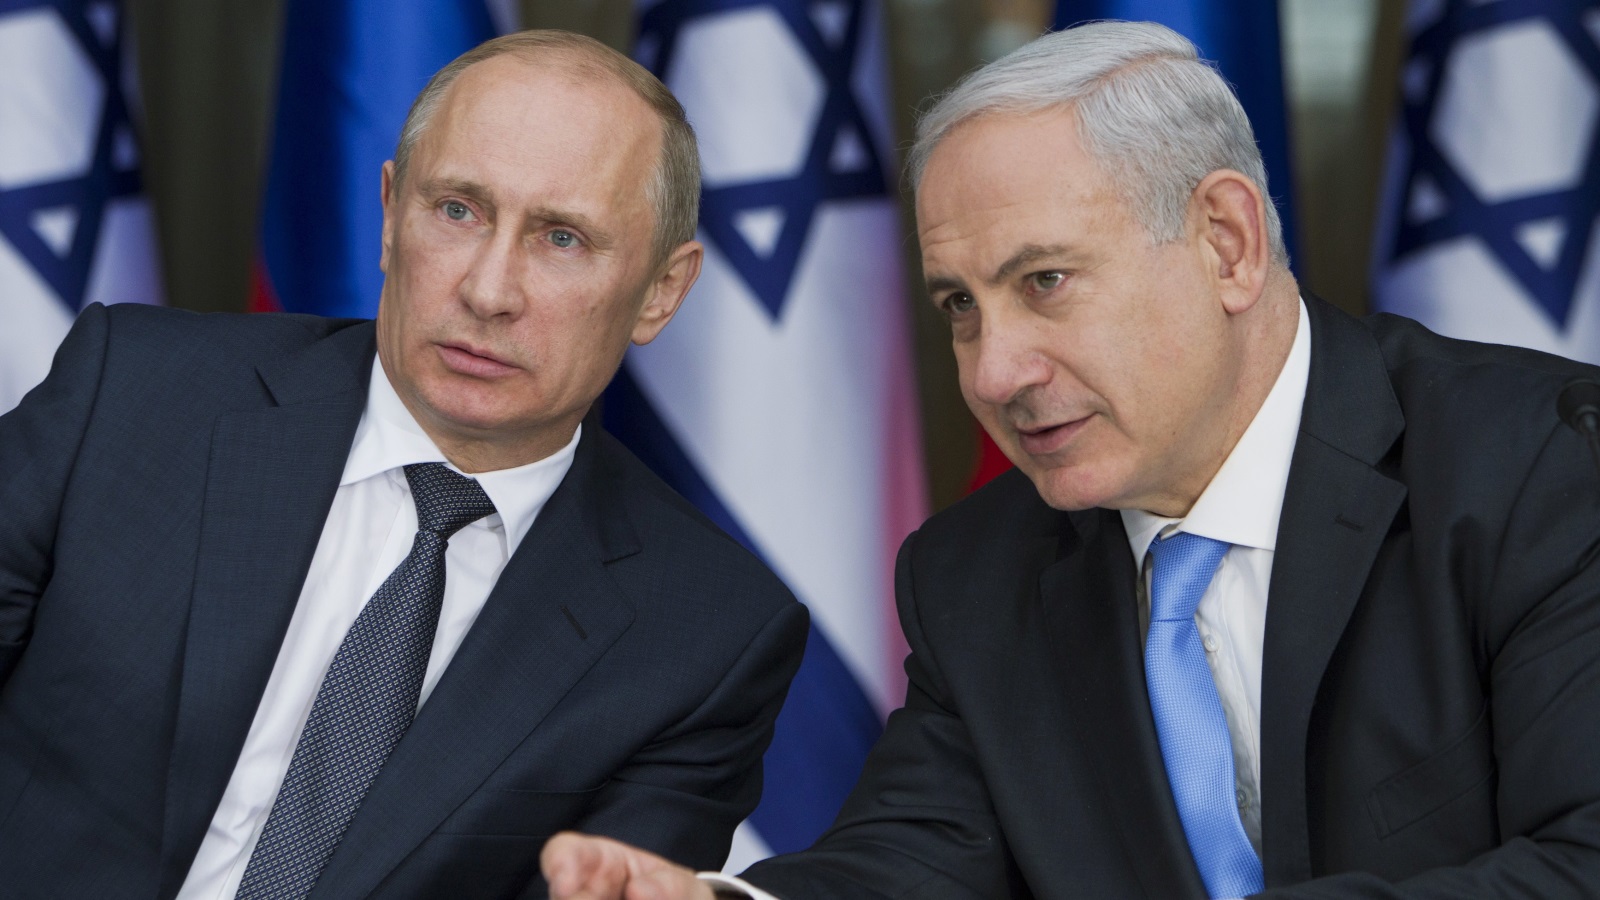 الأجواء العامة في إسرائيل هي أجواء تتجه نحو الشعور بالإخفاق الدبلوماسي لنتنياهو الذي كان يزعم أن قدرته على إقناع الروس بمصالح إسرائيل كبيرة